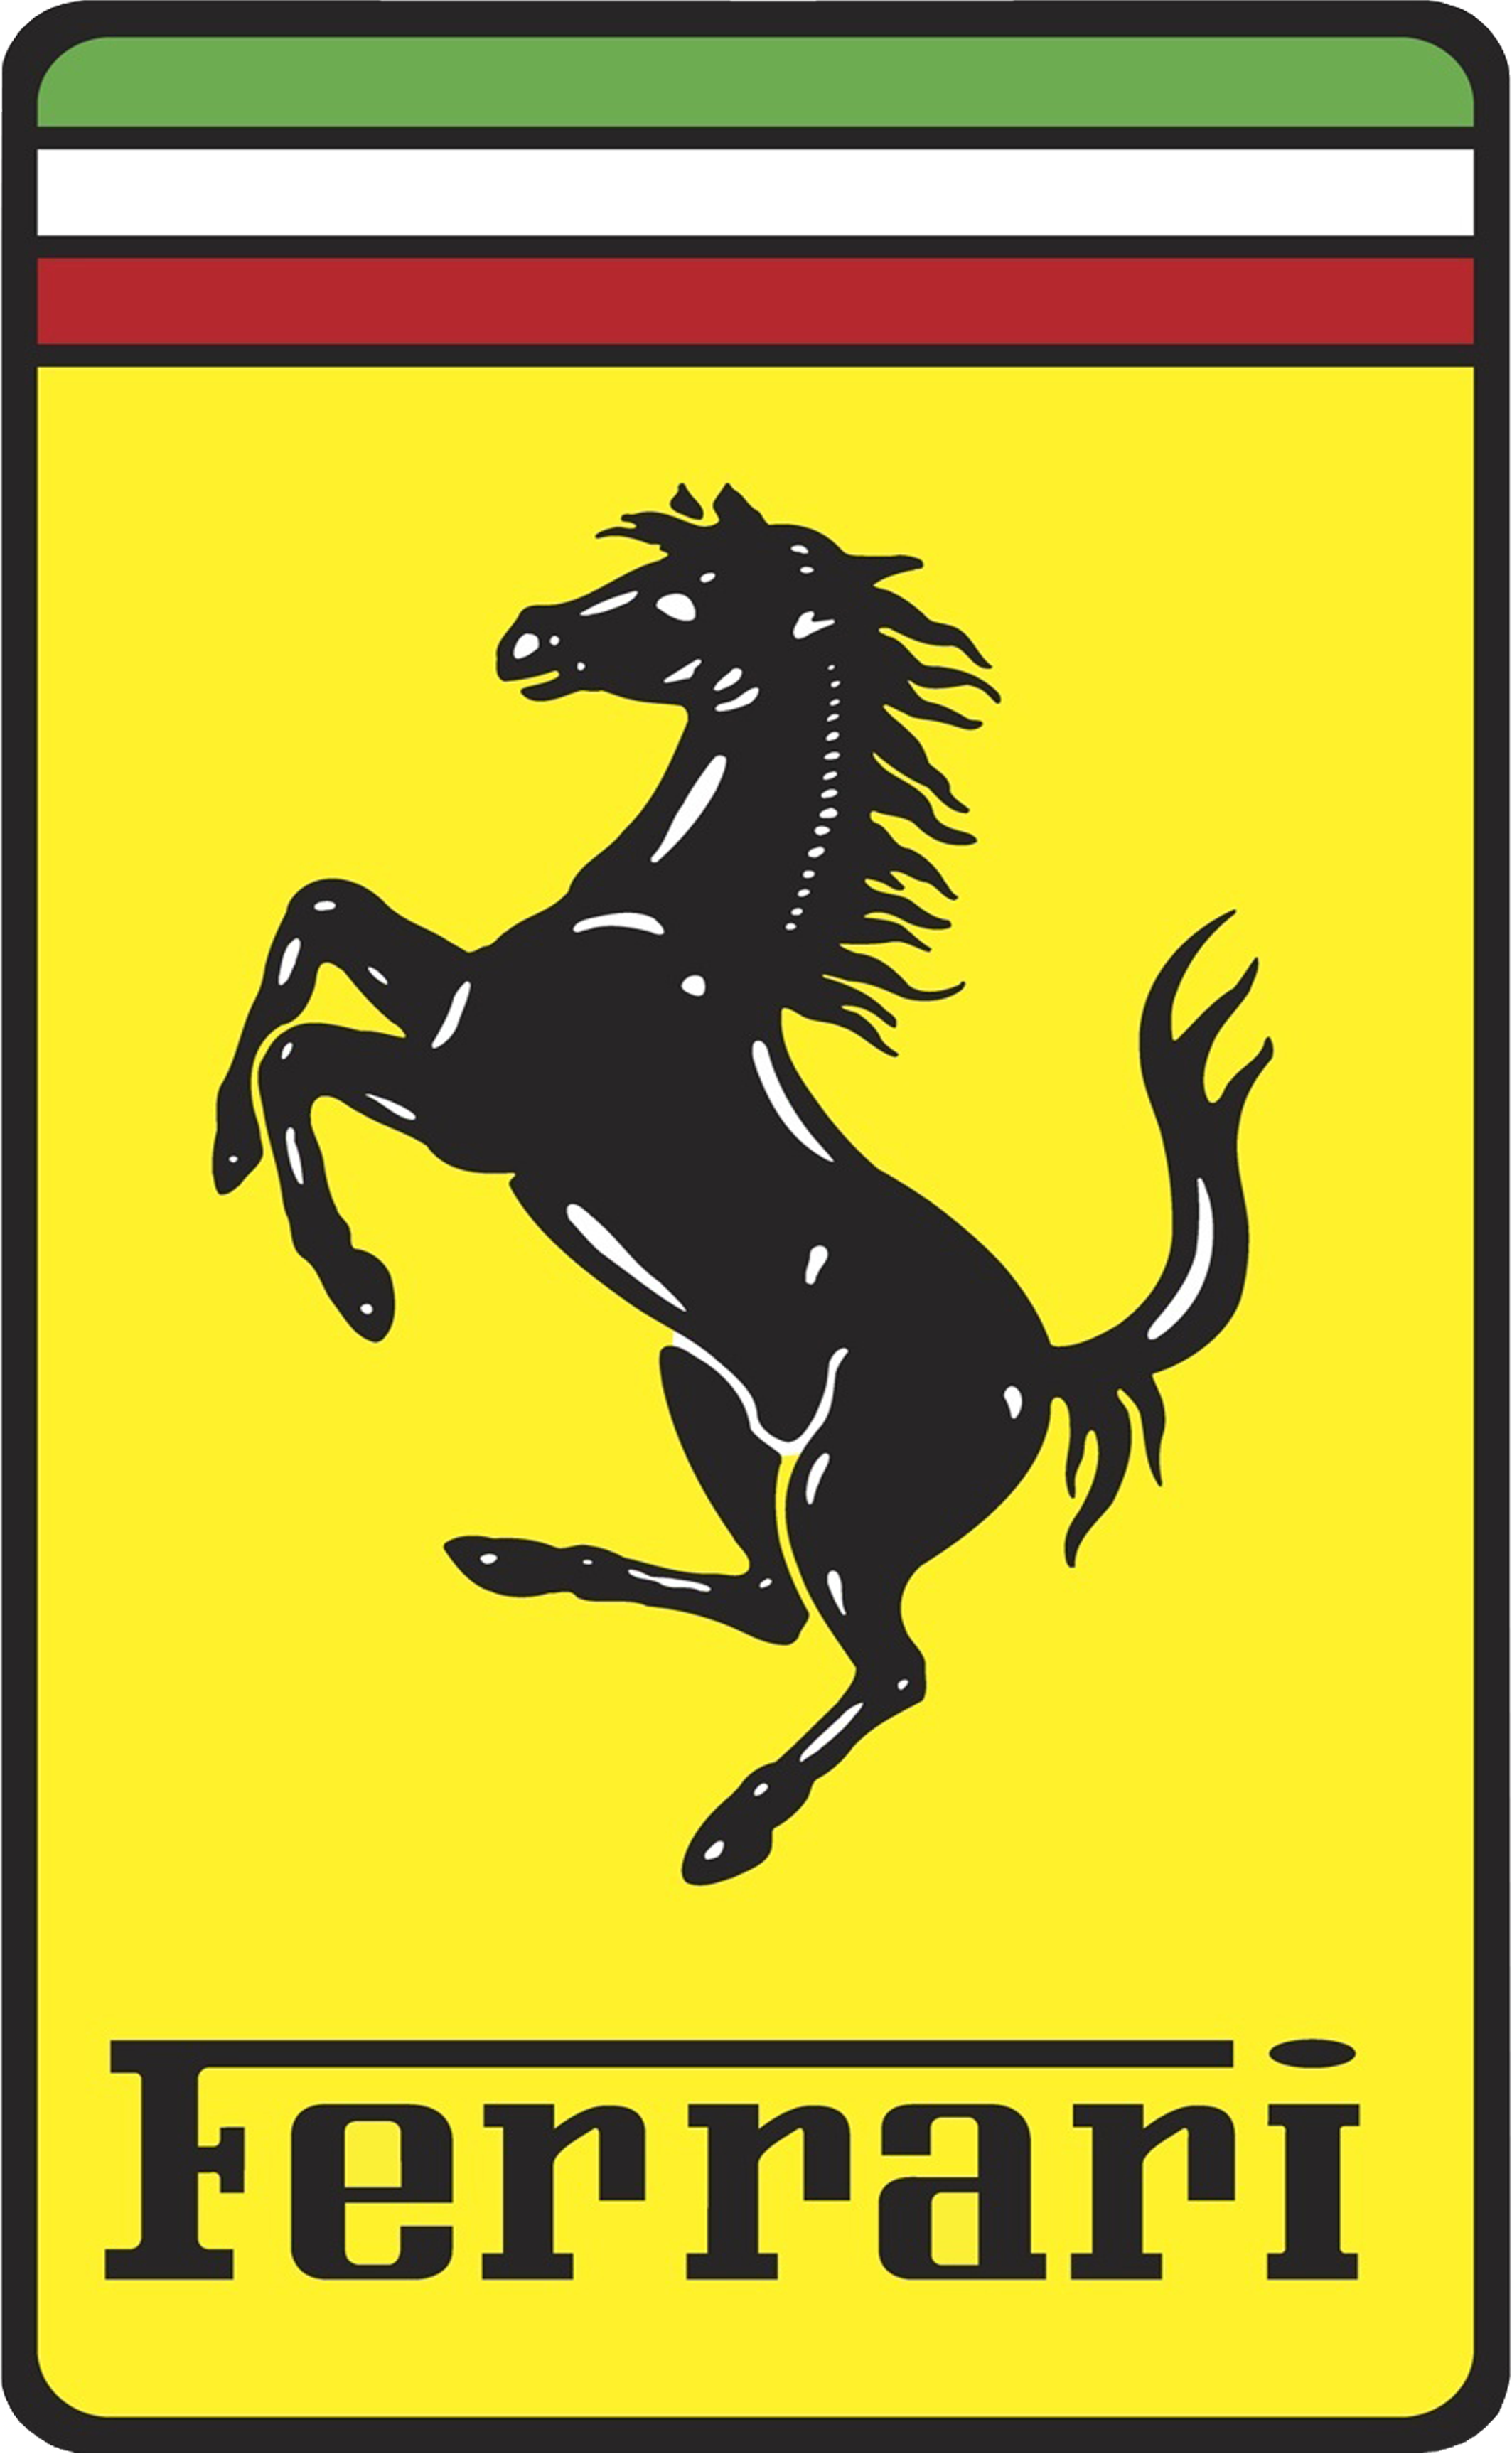 Enzo Laferrari Gto Maranello Ferrari Logo PNG Image